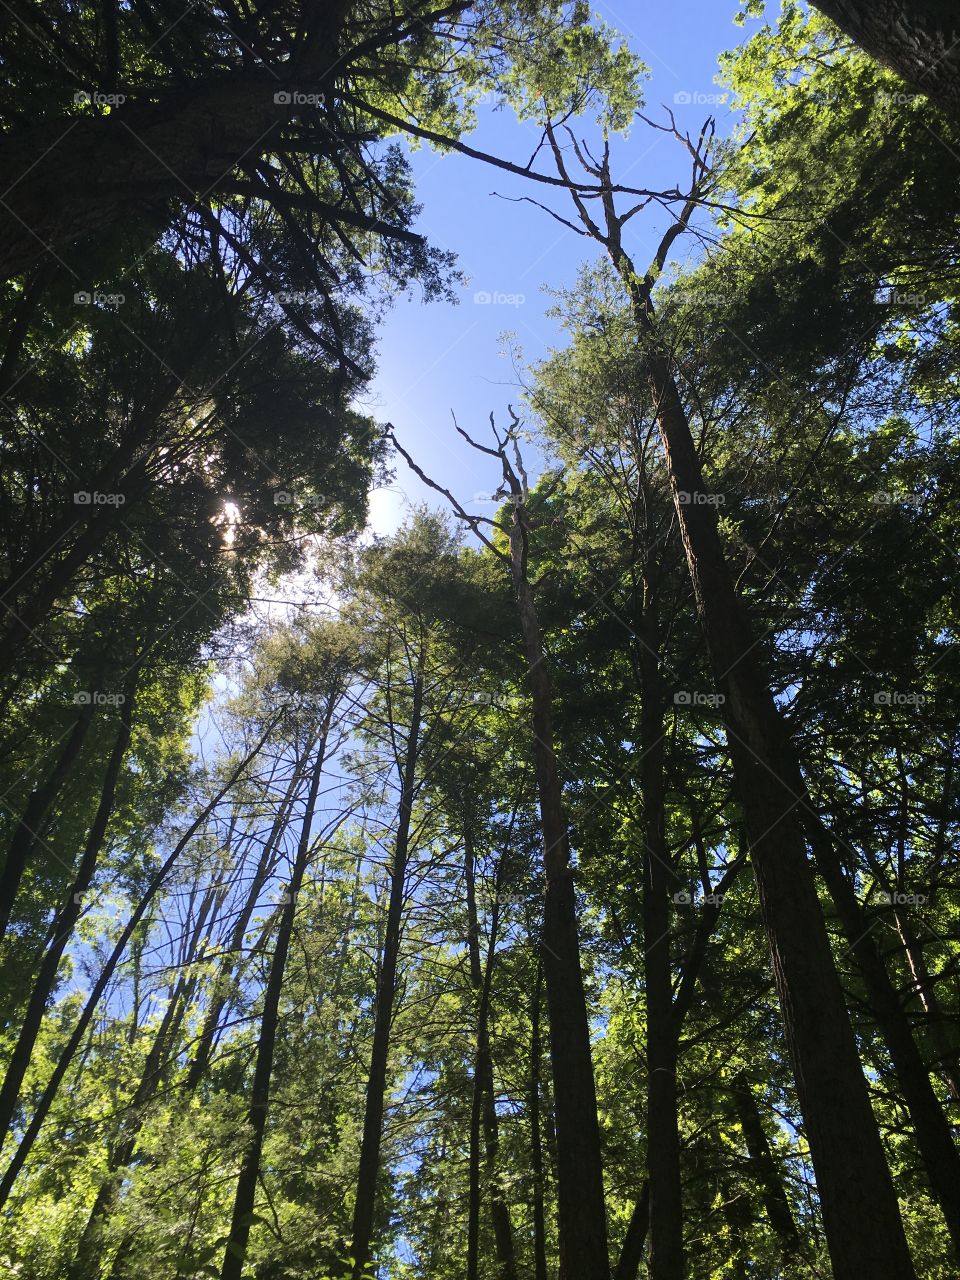 Hiking among trees